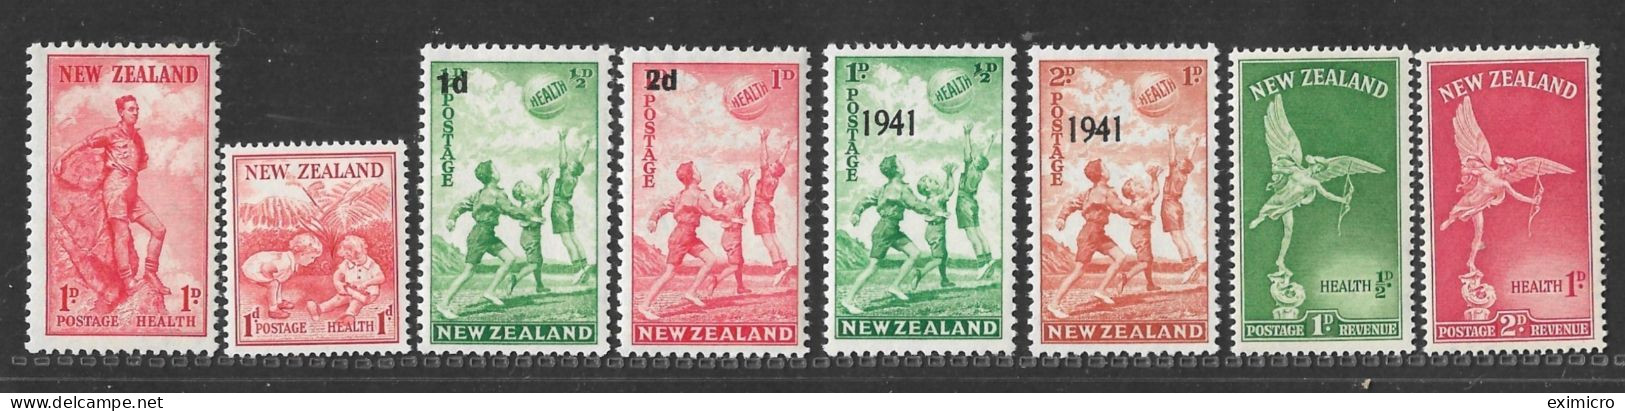 NEW ZEALAND UNMOUNTED MINT COLLECTION OF HEALTH SETS 1937,1938,1939,1941,1947 Cat £19.85 - Ongebruikt